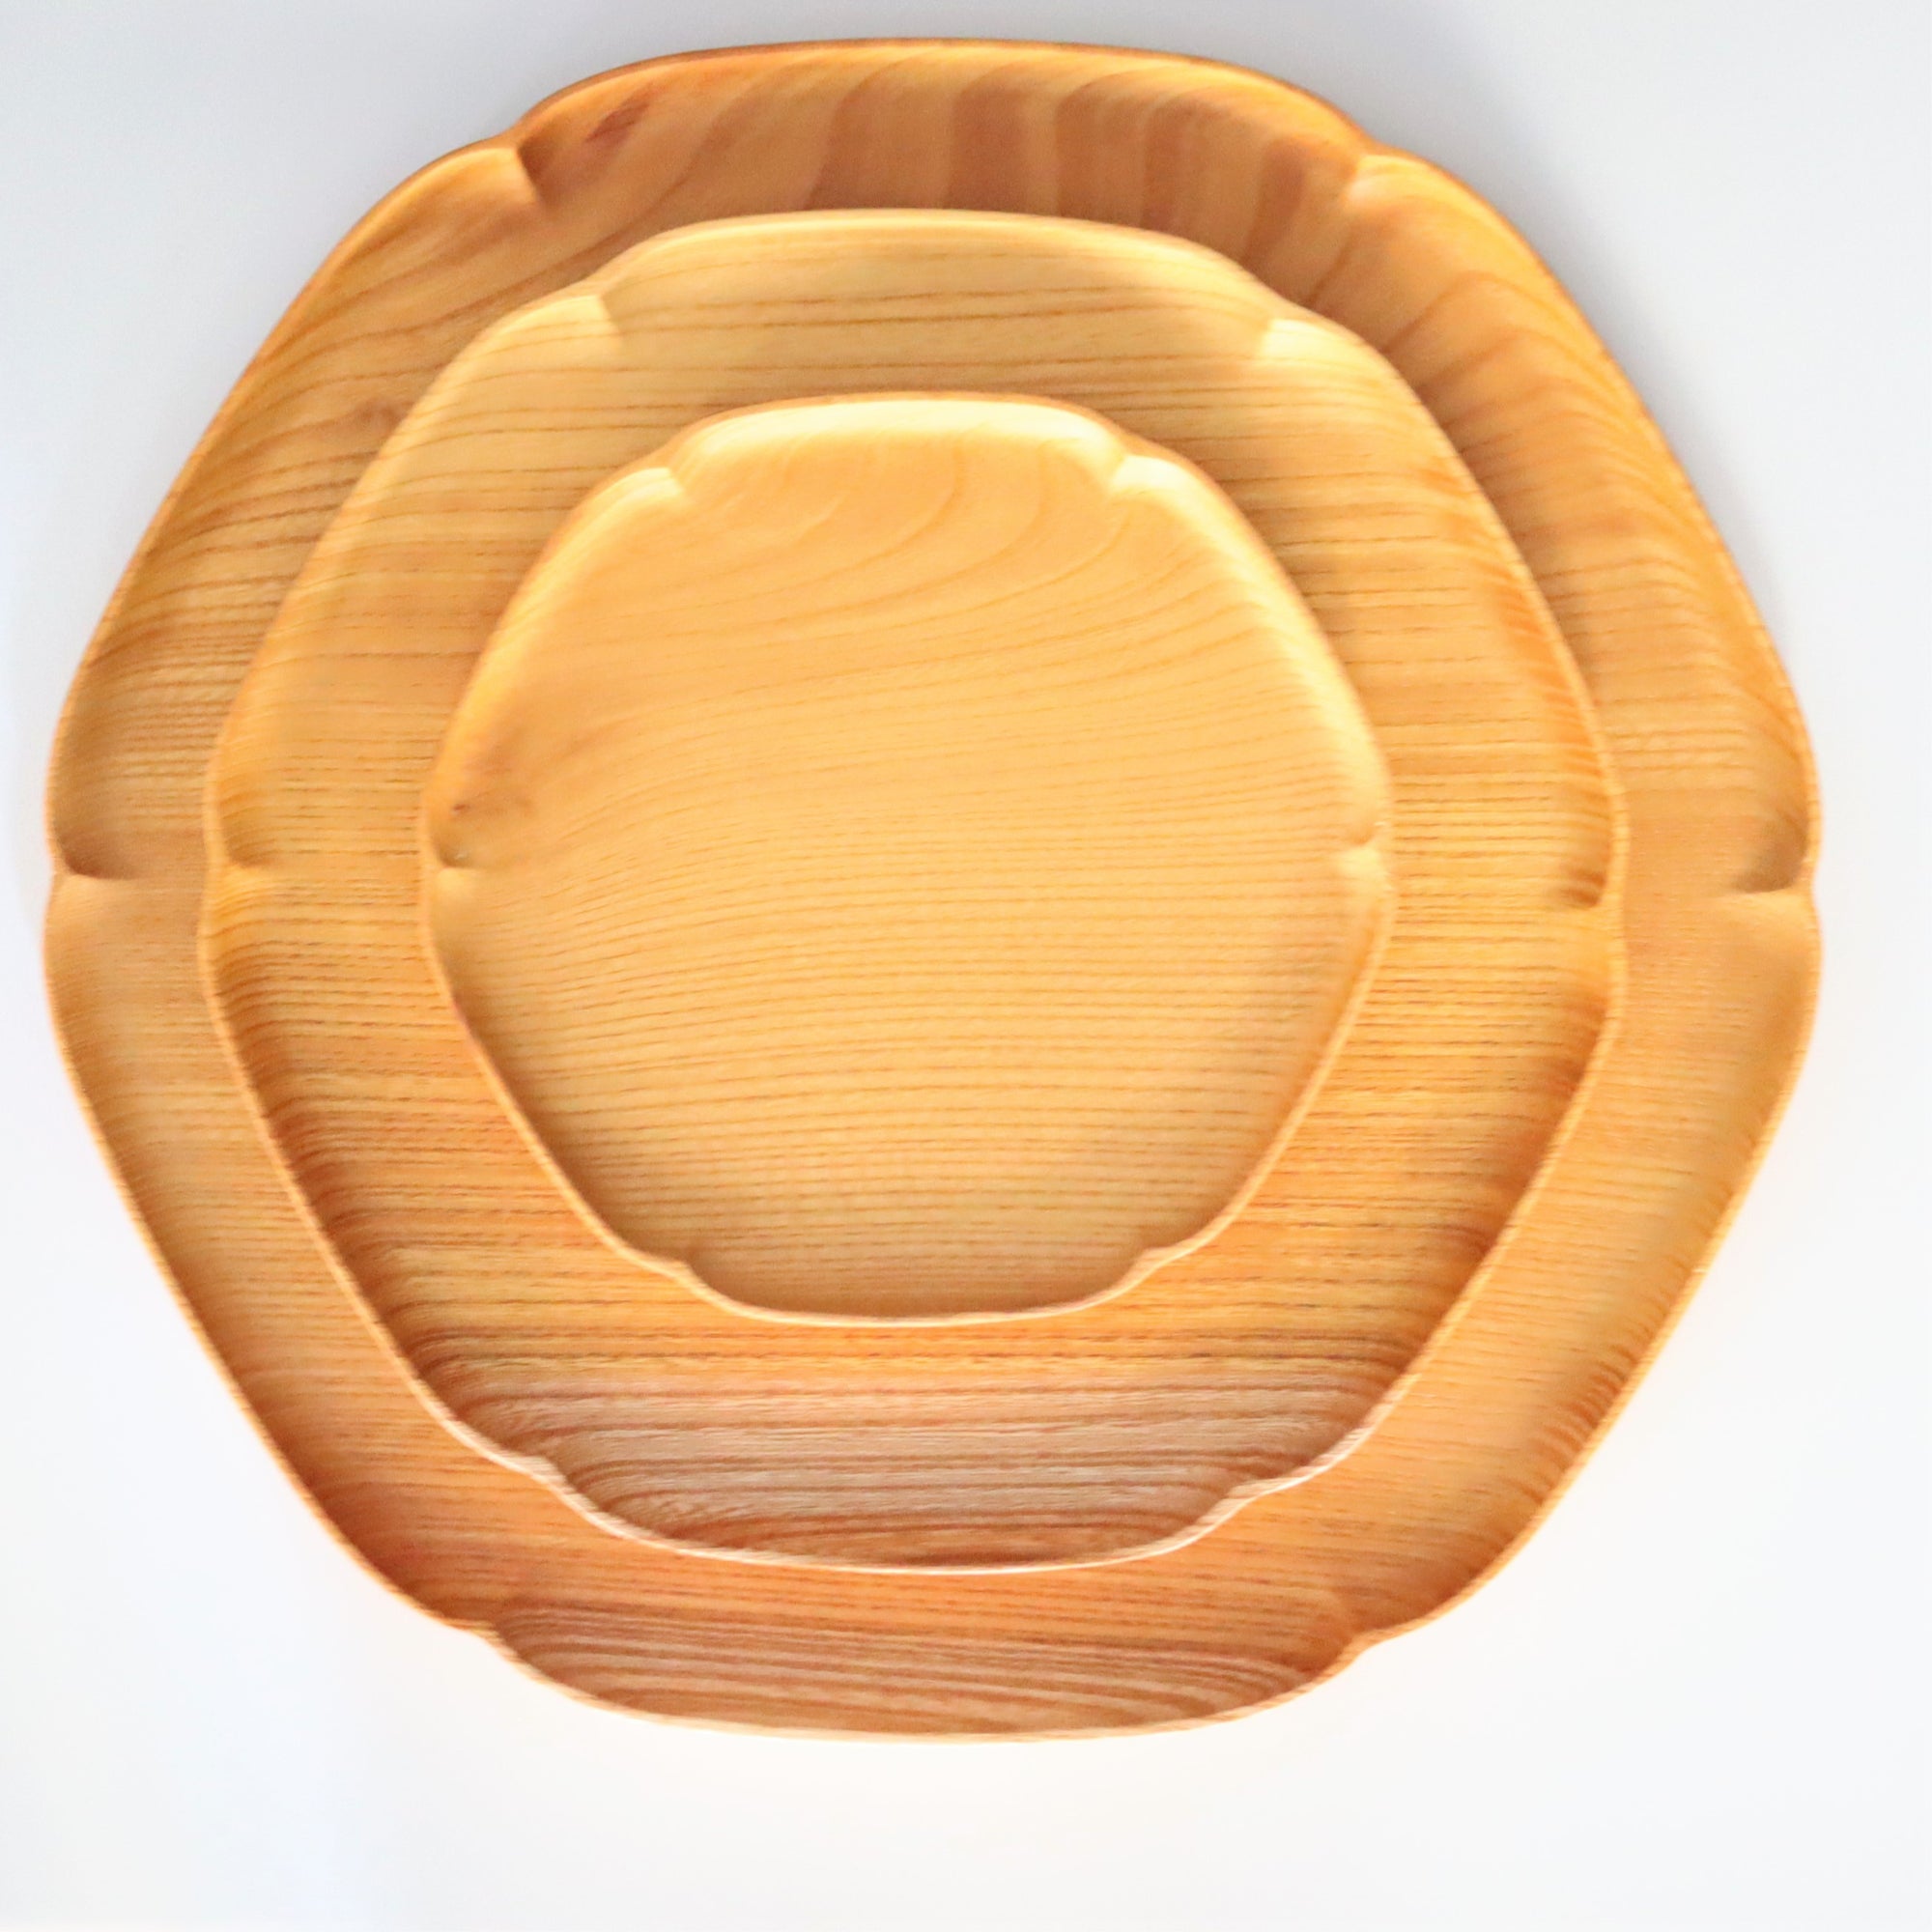 【Aizawa wood crafts】KITO zelkova round snow-shaped plate